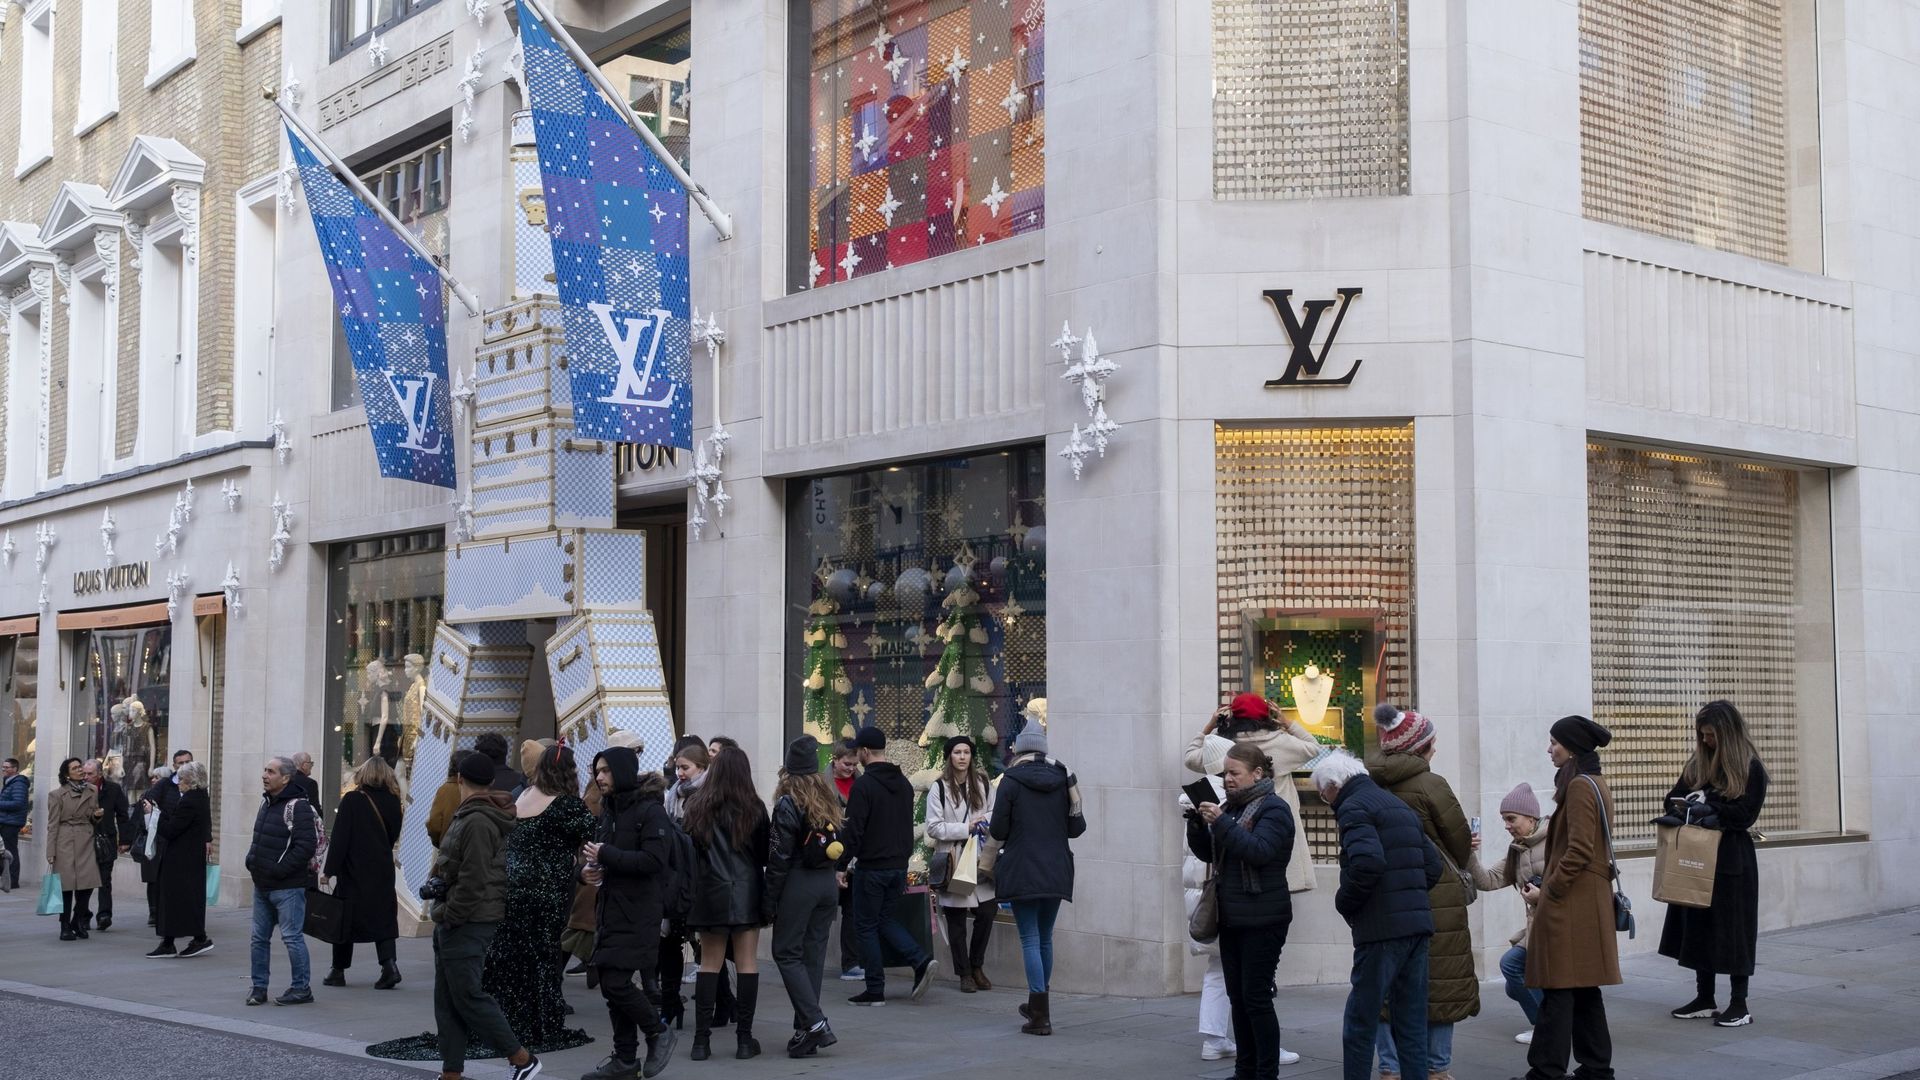 Voici le plus petit sac Louis Vuitton au monde et il va être vendu aux  enchères